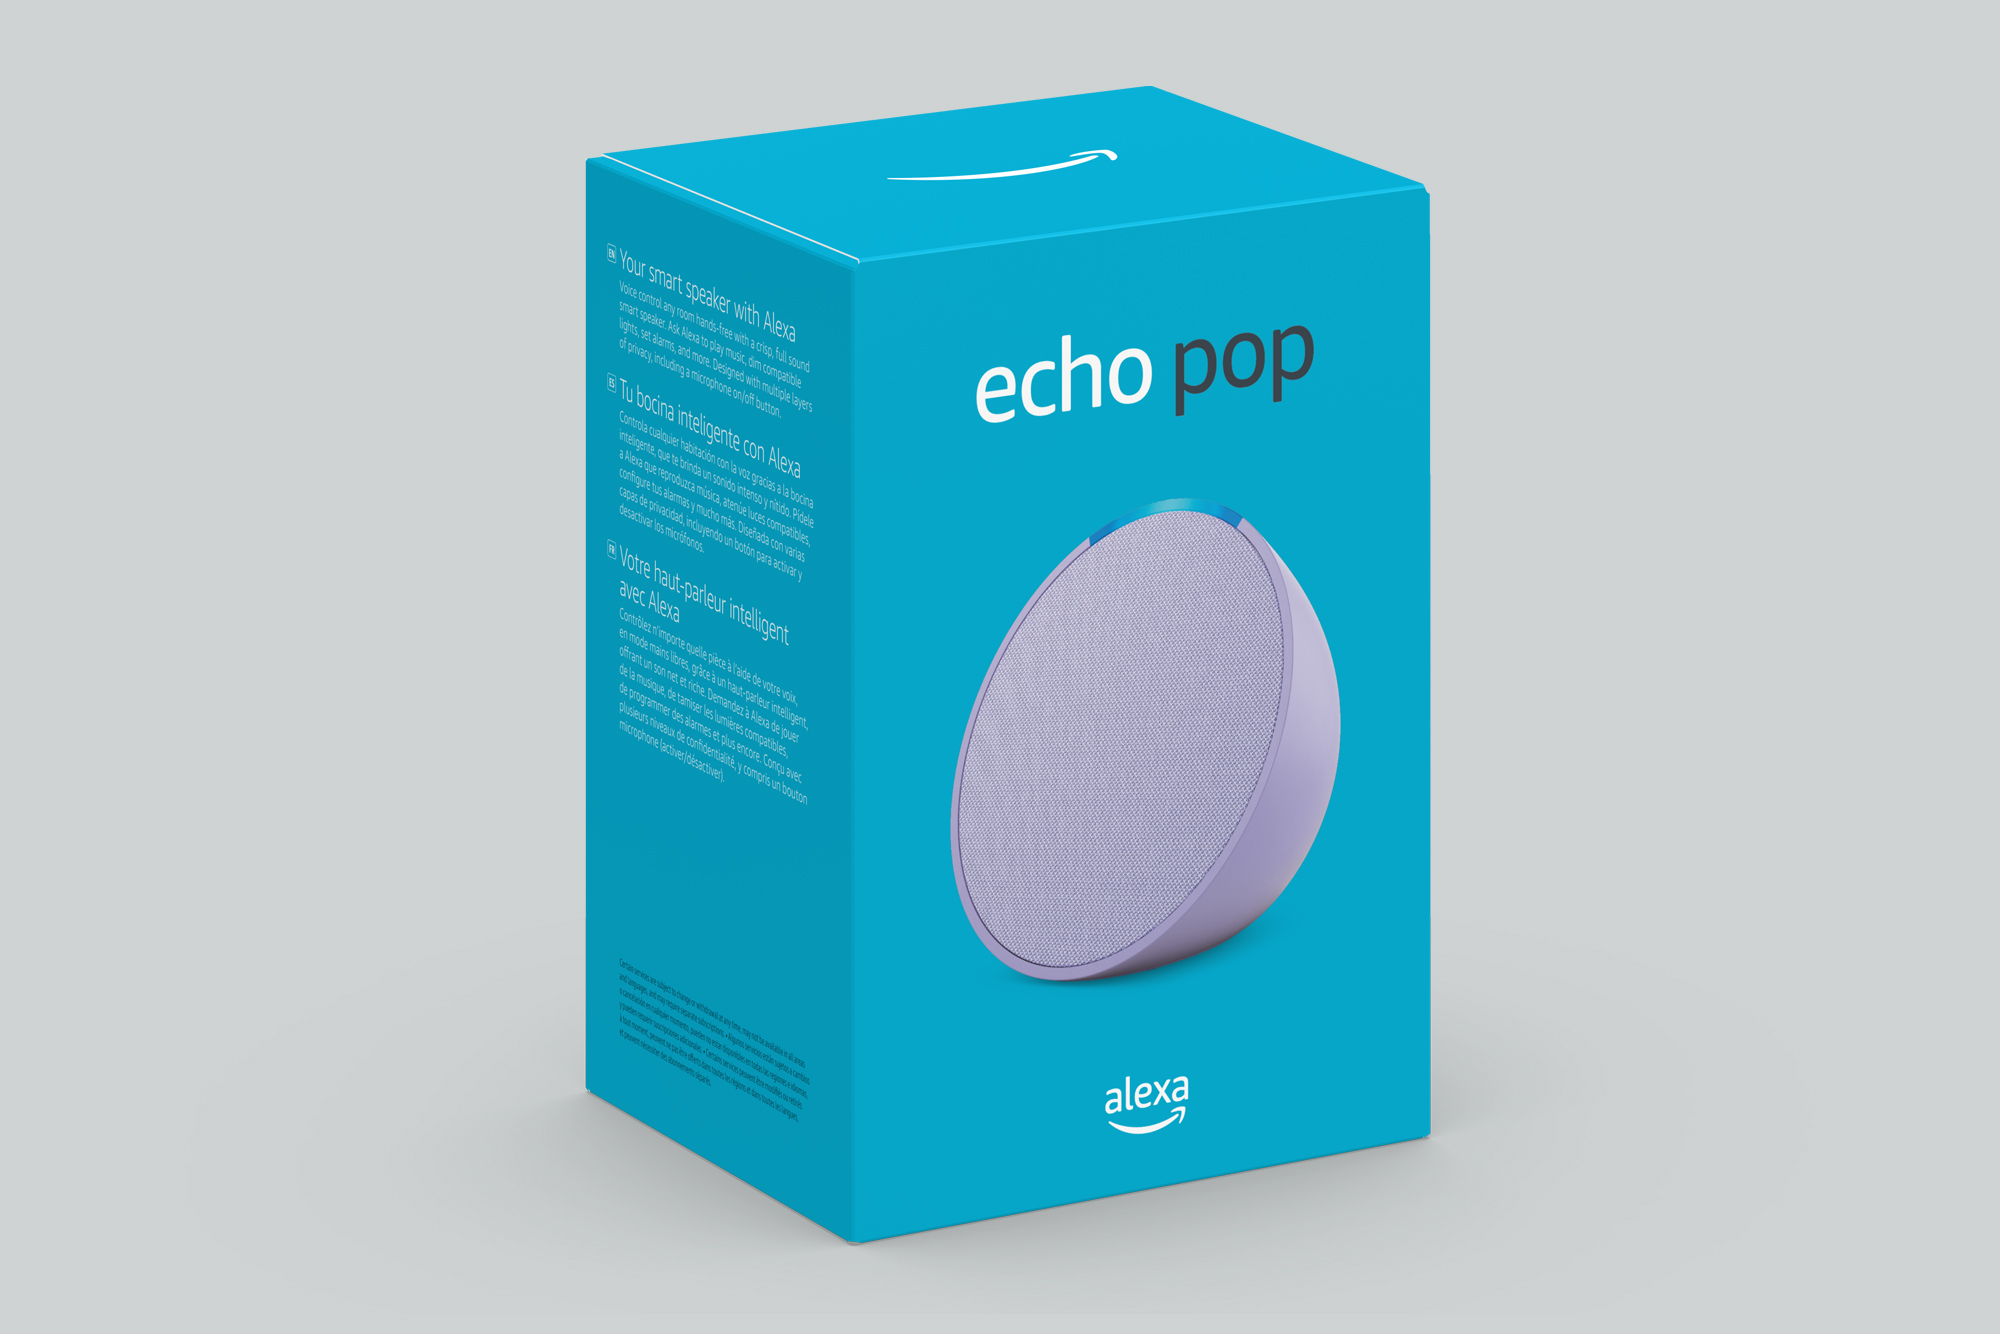 echo-pop-packaging-a